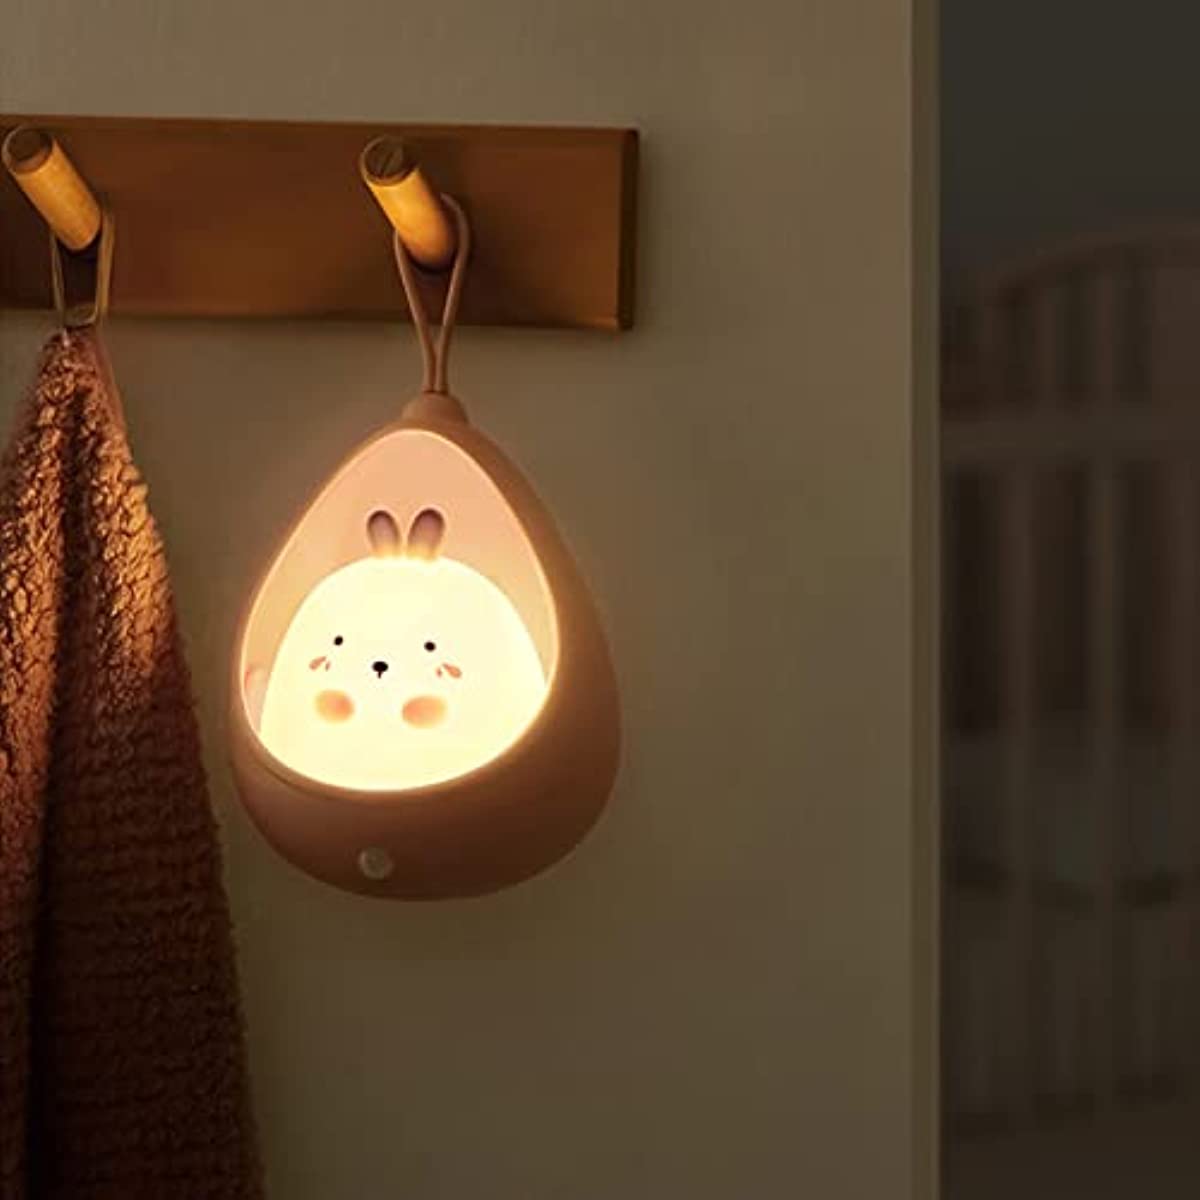 Luz LED Magnetica Lampara Con Sensor de Movimiento Luces para el Hogar  Oficina